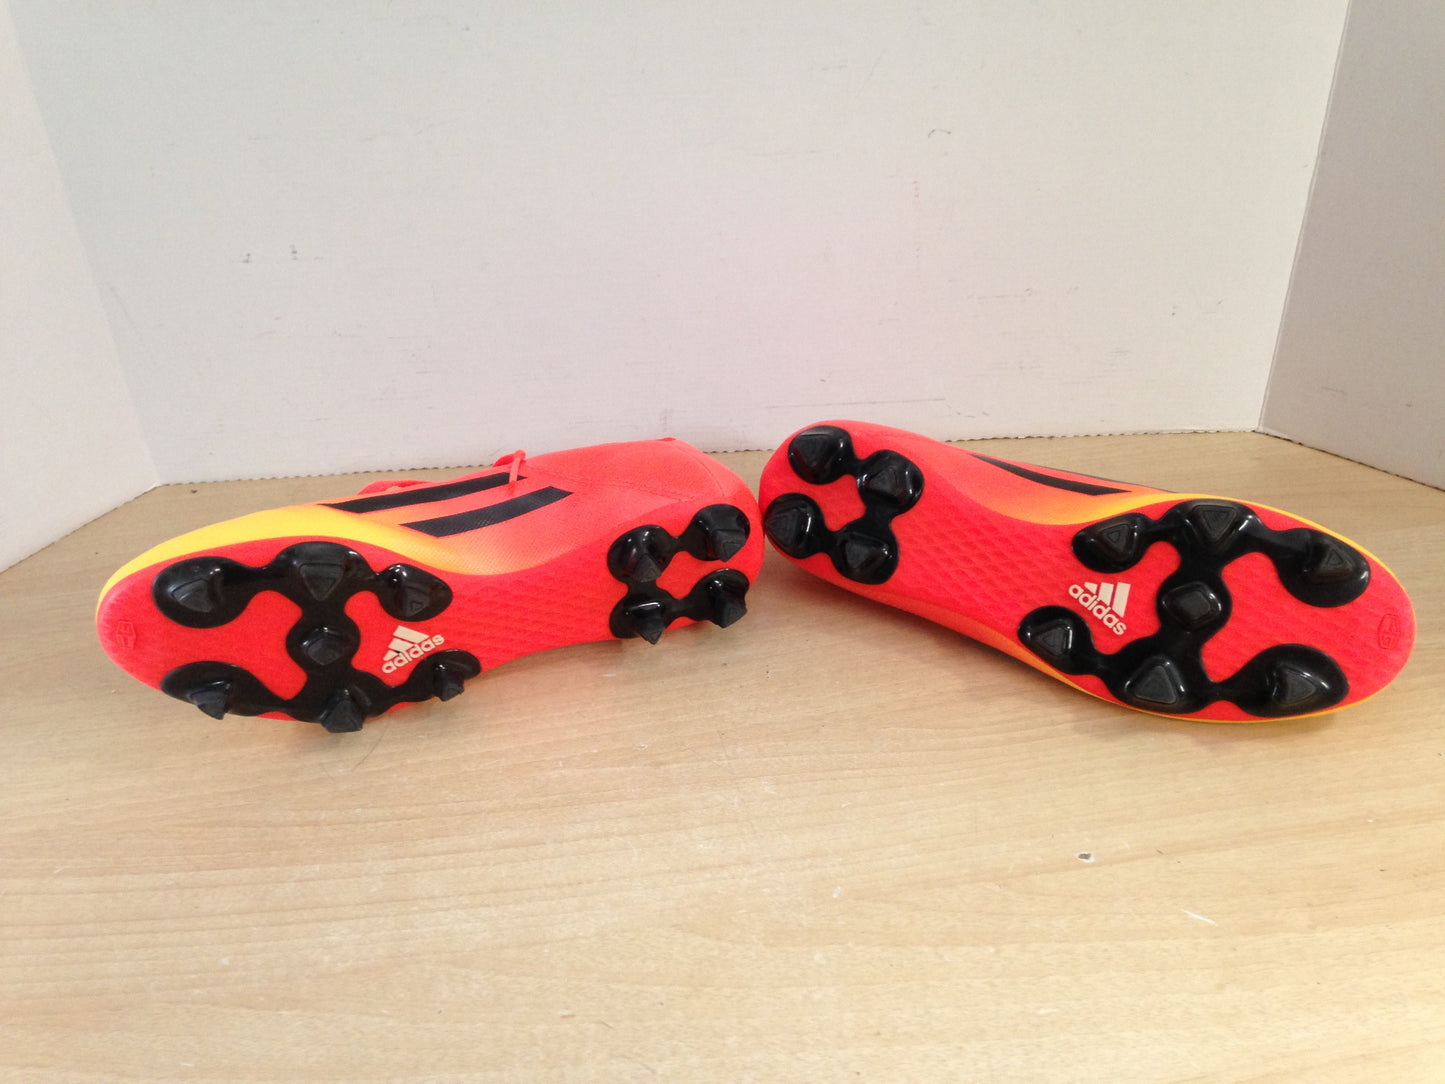 Soccer Shoes Cleats Men's Size 9.5 Orange Black Yellow Excellent